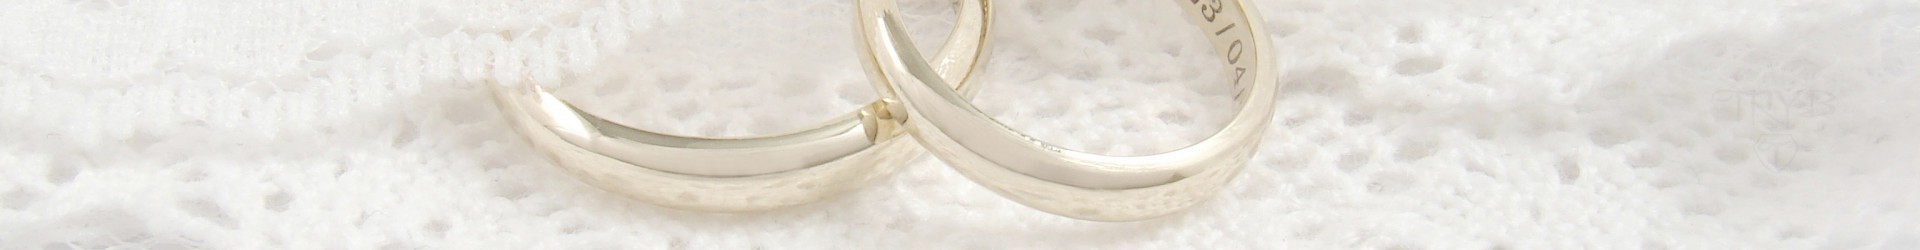 Klasyczne lub nietypowe obrączki ślubne ze złota, białego złota, srebra